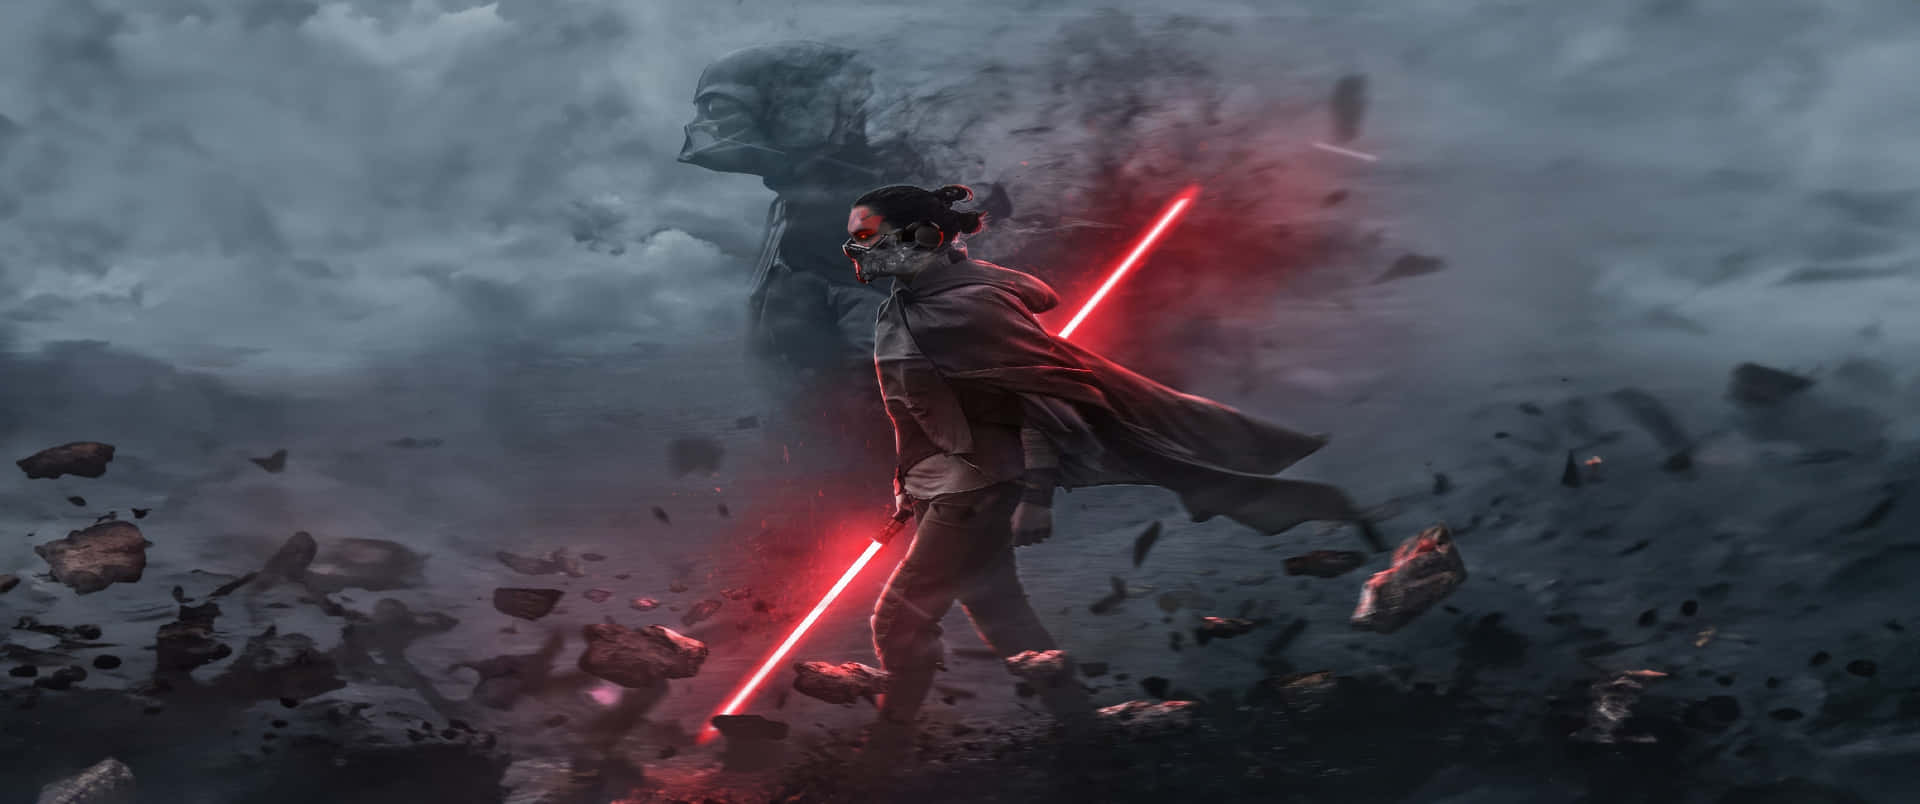 Star Wars Sith Lord Battle Scene Ultra Wide Wallpaper